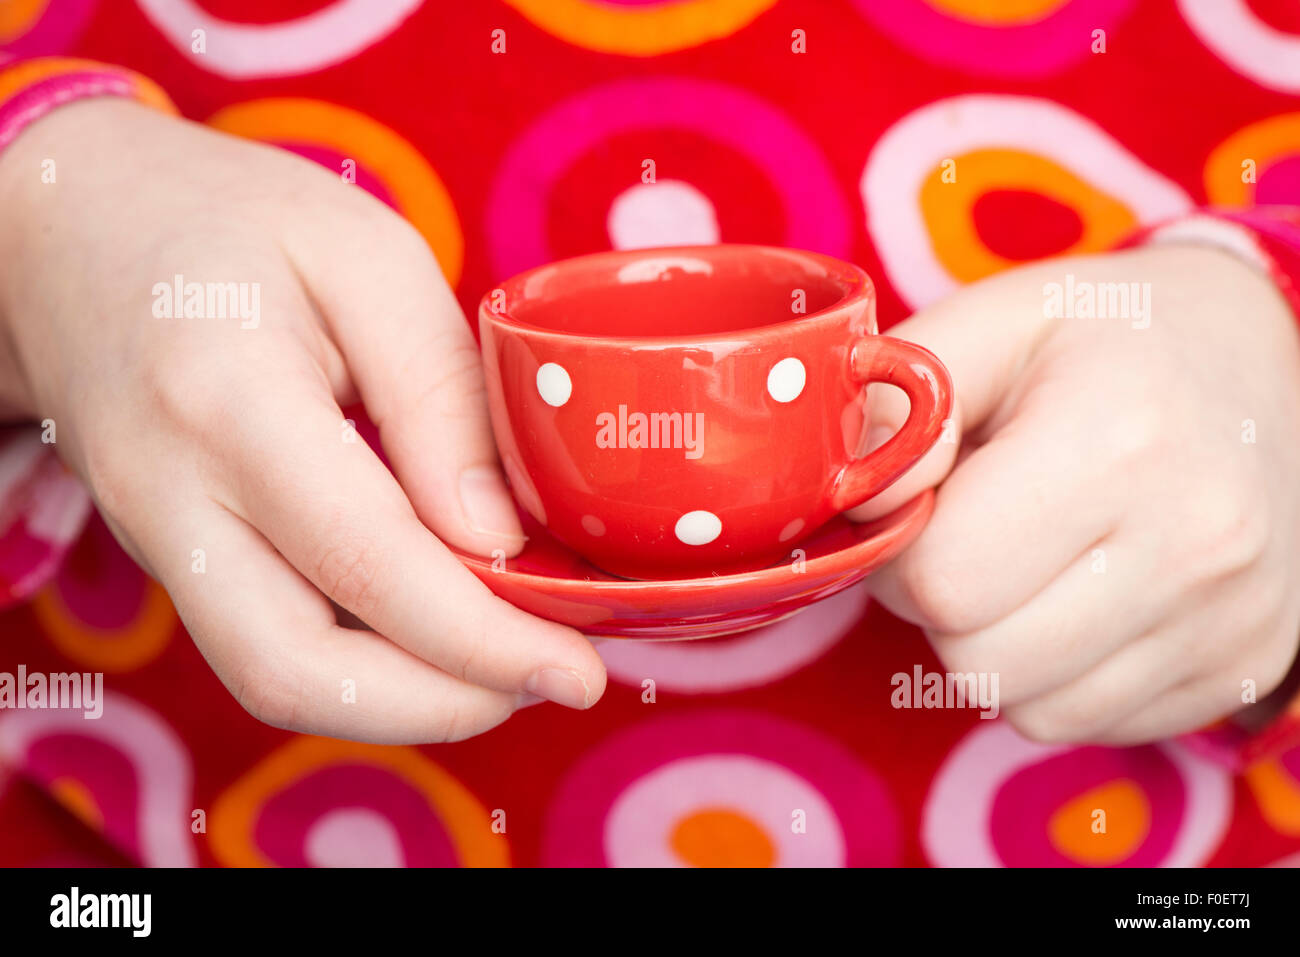 Kleines Mädchen hält gepunktete Teetasse spielen Teaparty. Nahaufnahme der Hände des Kindes. Das Bild zeigt einen entzückenden Moment der unschuldigen Kindheit spielen. Stockfoto